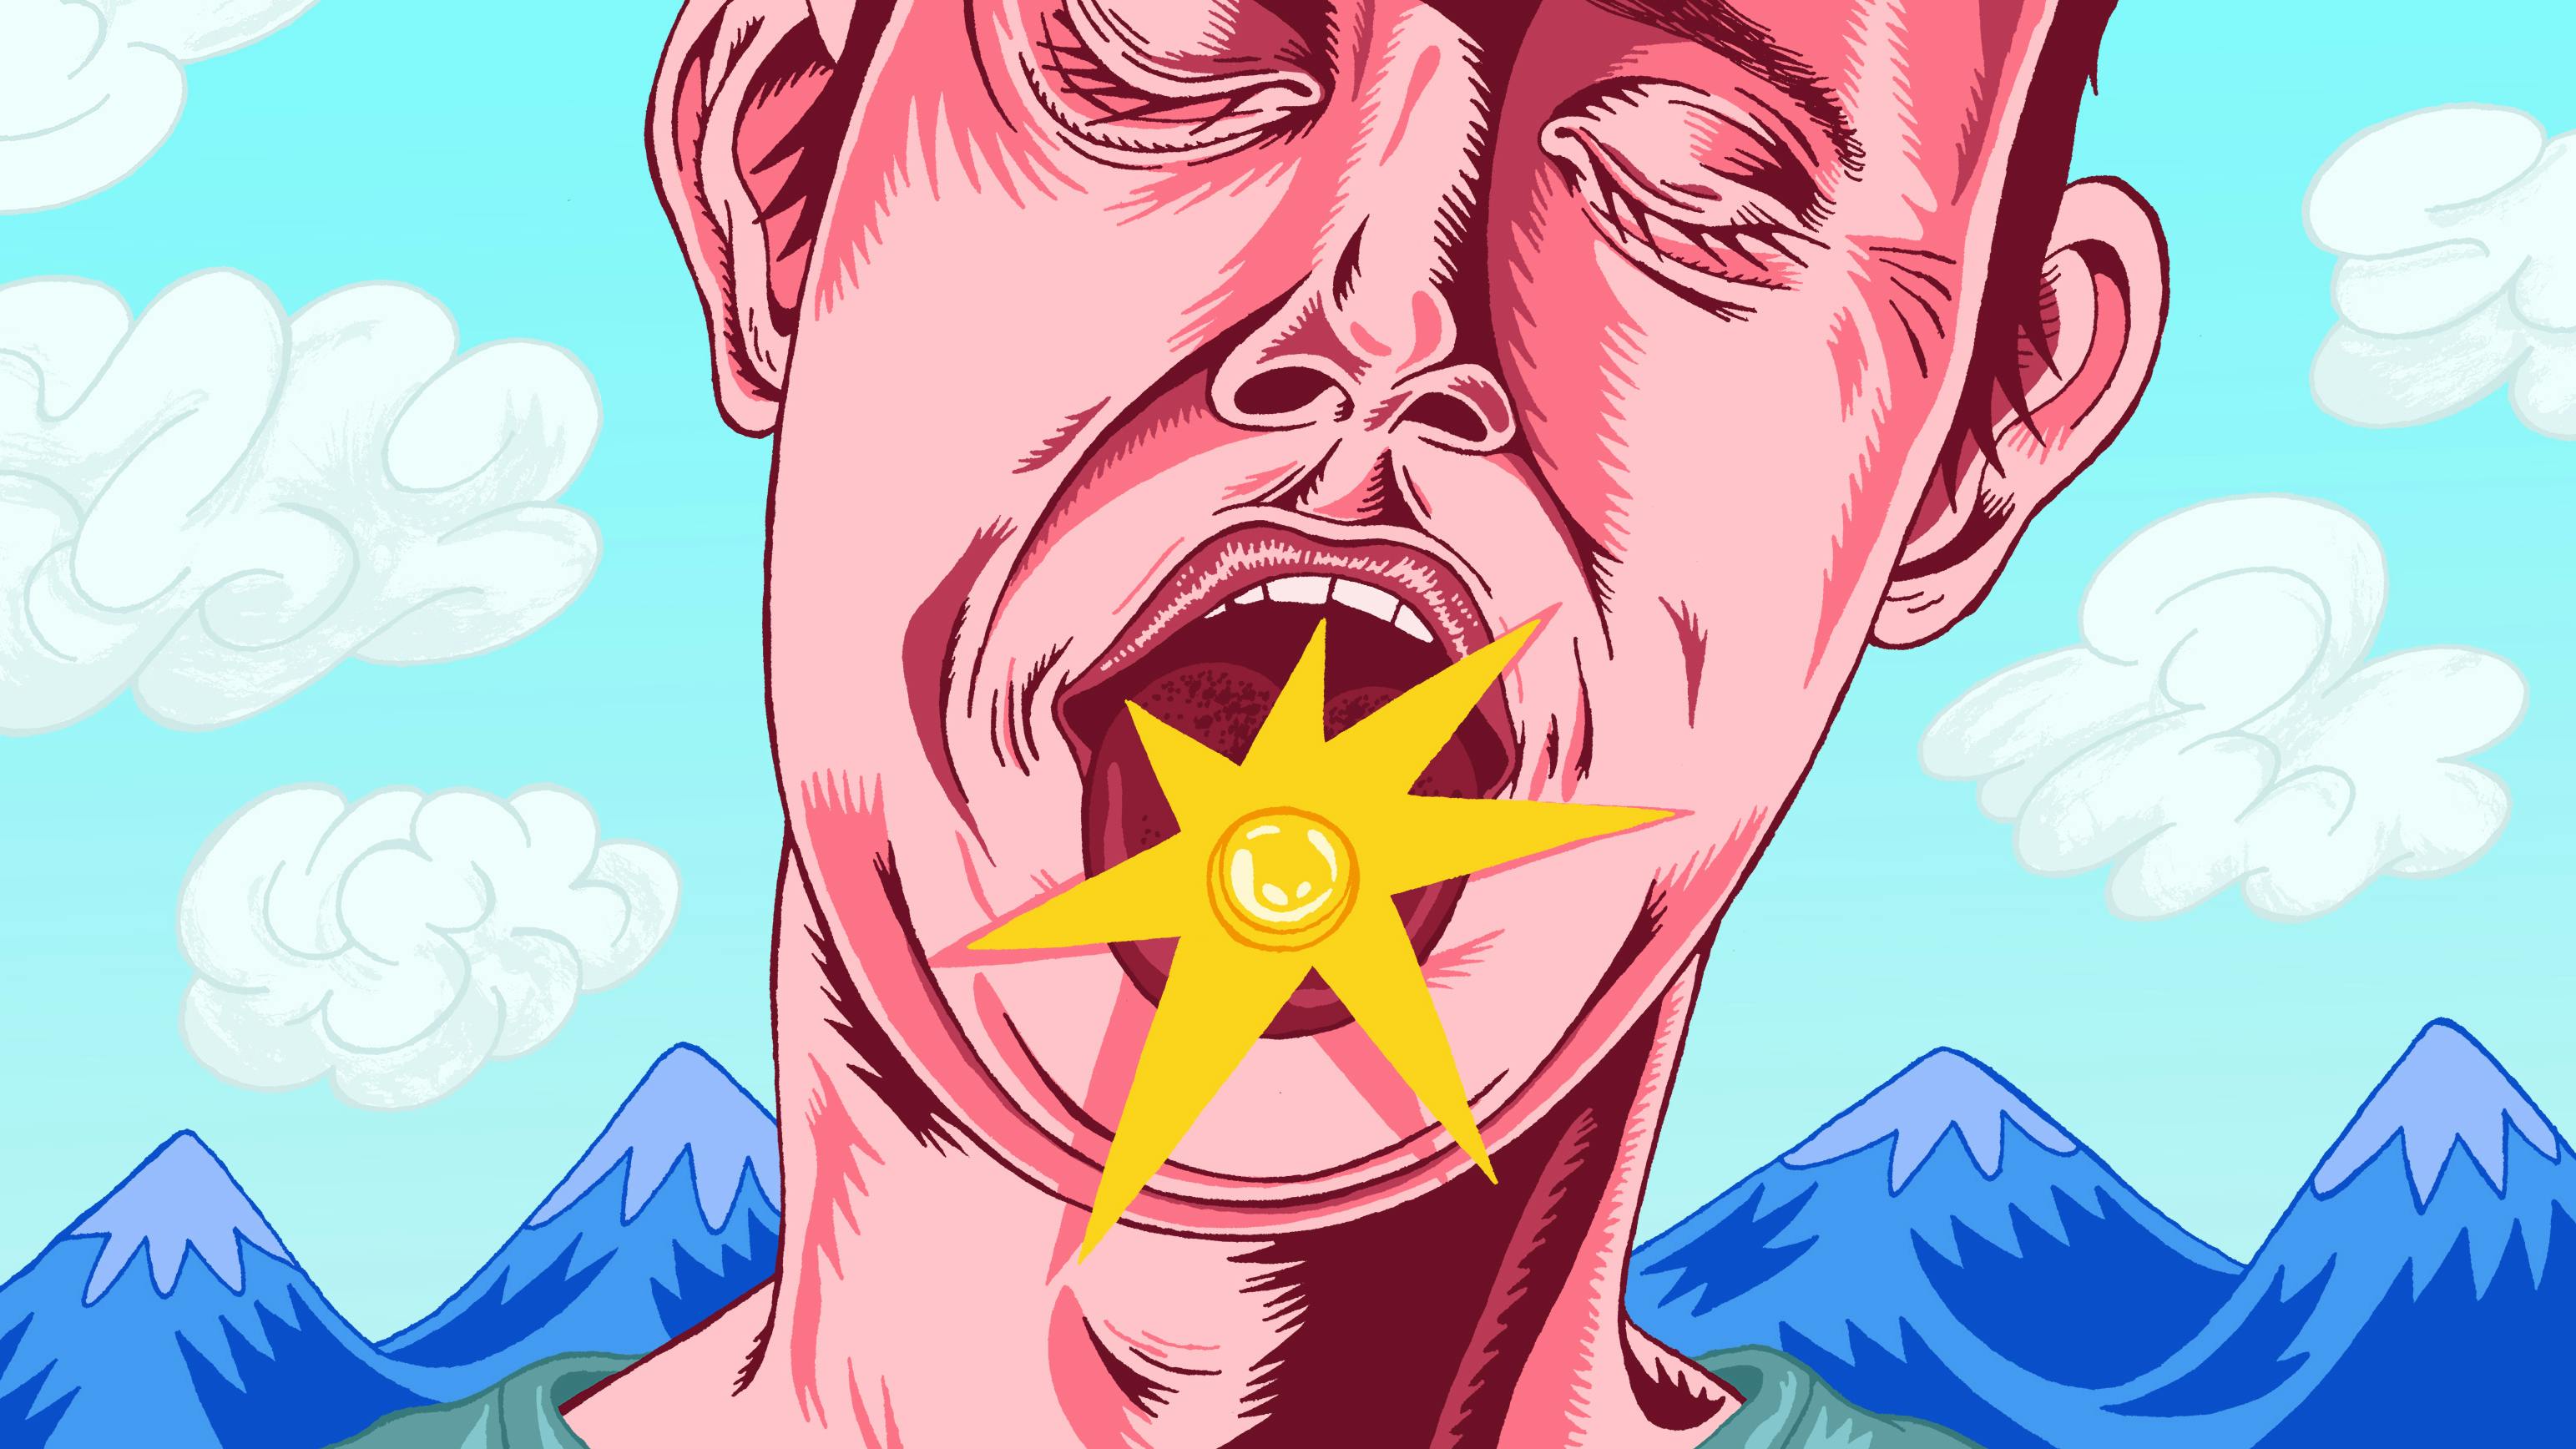 Illustration: Ein Mann streckt seine Zunge heraus, darauf liegt eine Pille. Im Hintergrund sind Berge zu sehen.